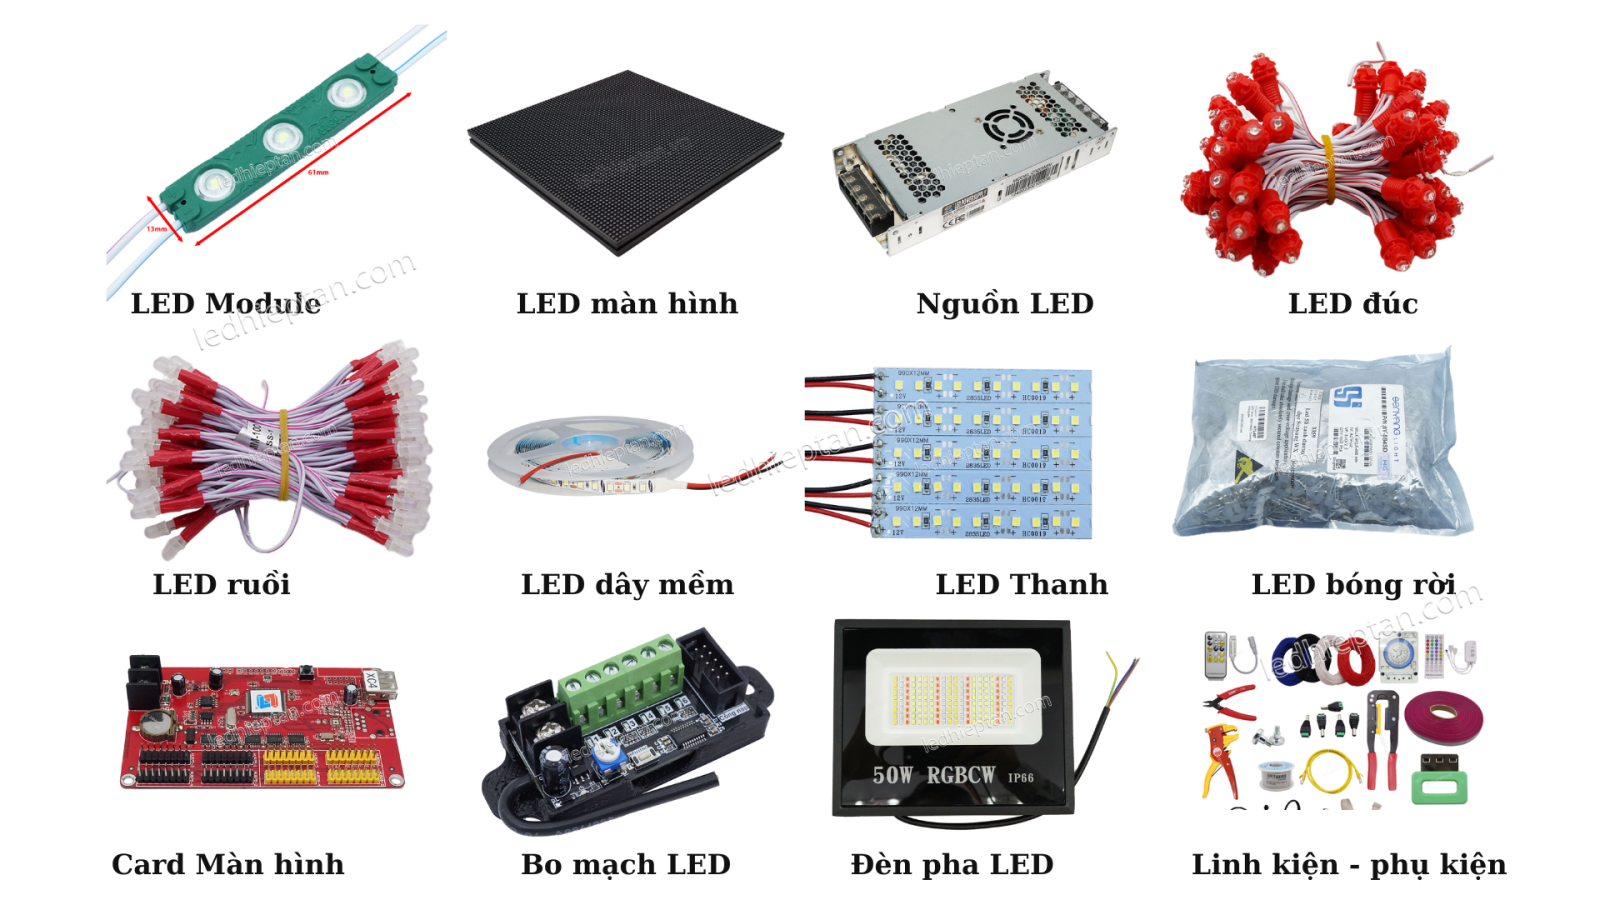 LED Hiệp Tân chuyên cung cấp đa dạng các loại đèn LED trong lĩnh vực Quảng Cáo – Chiếu Sáng – Trang Trí